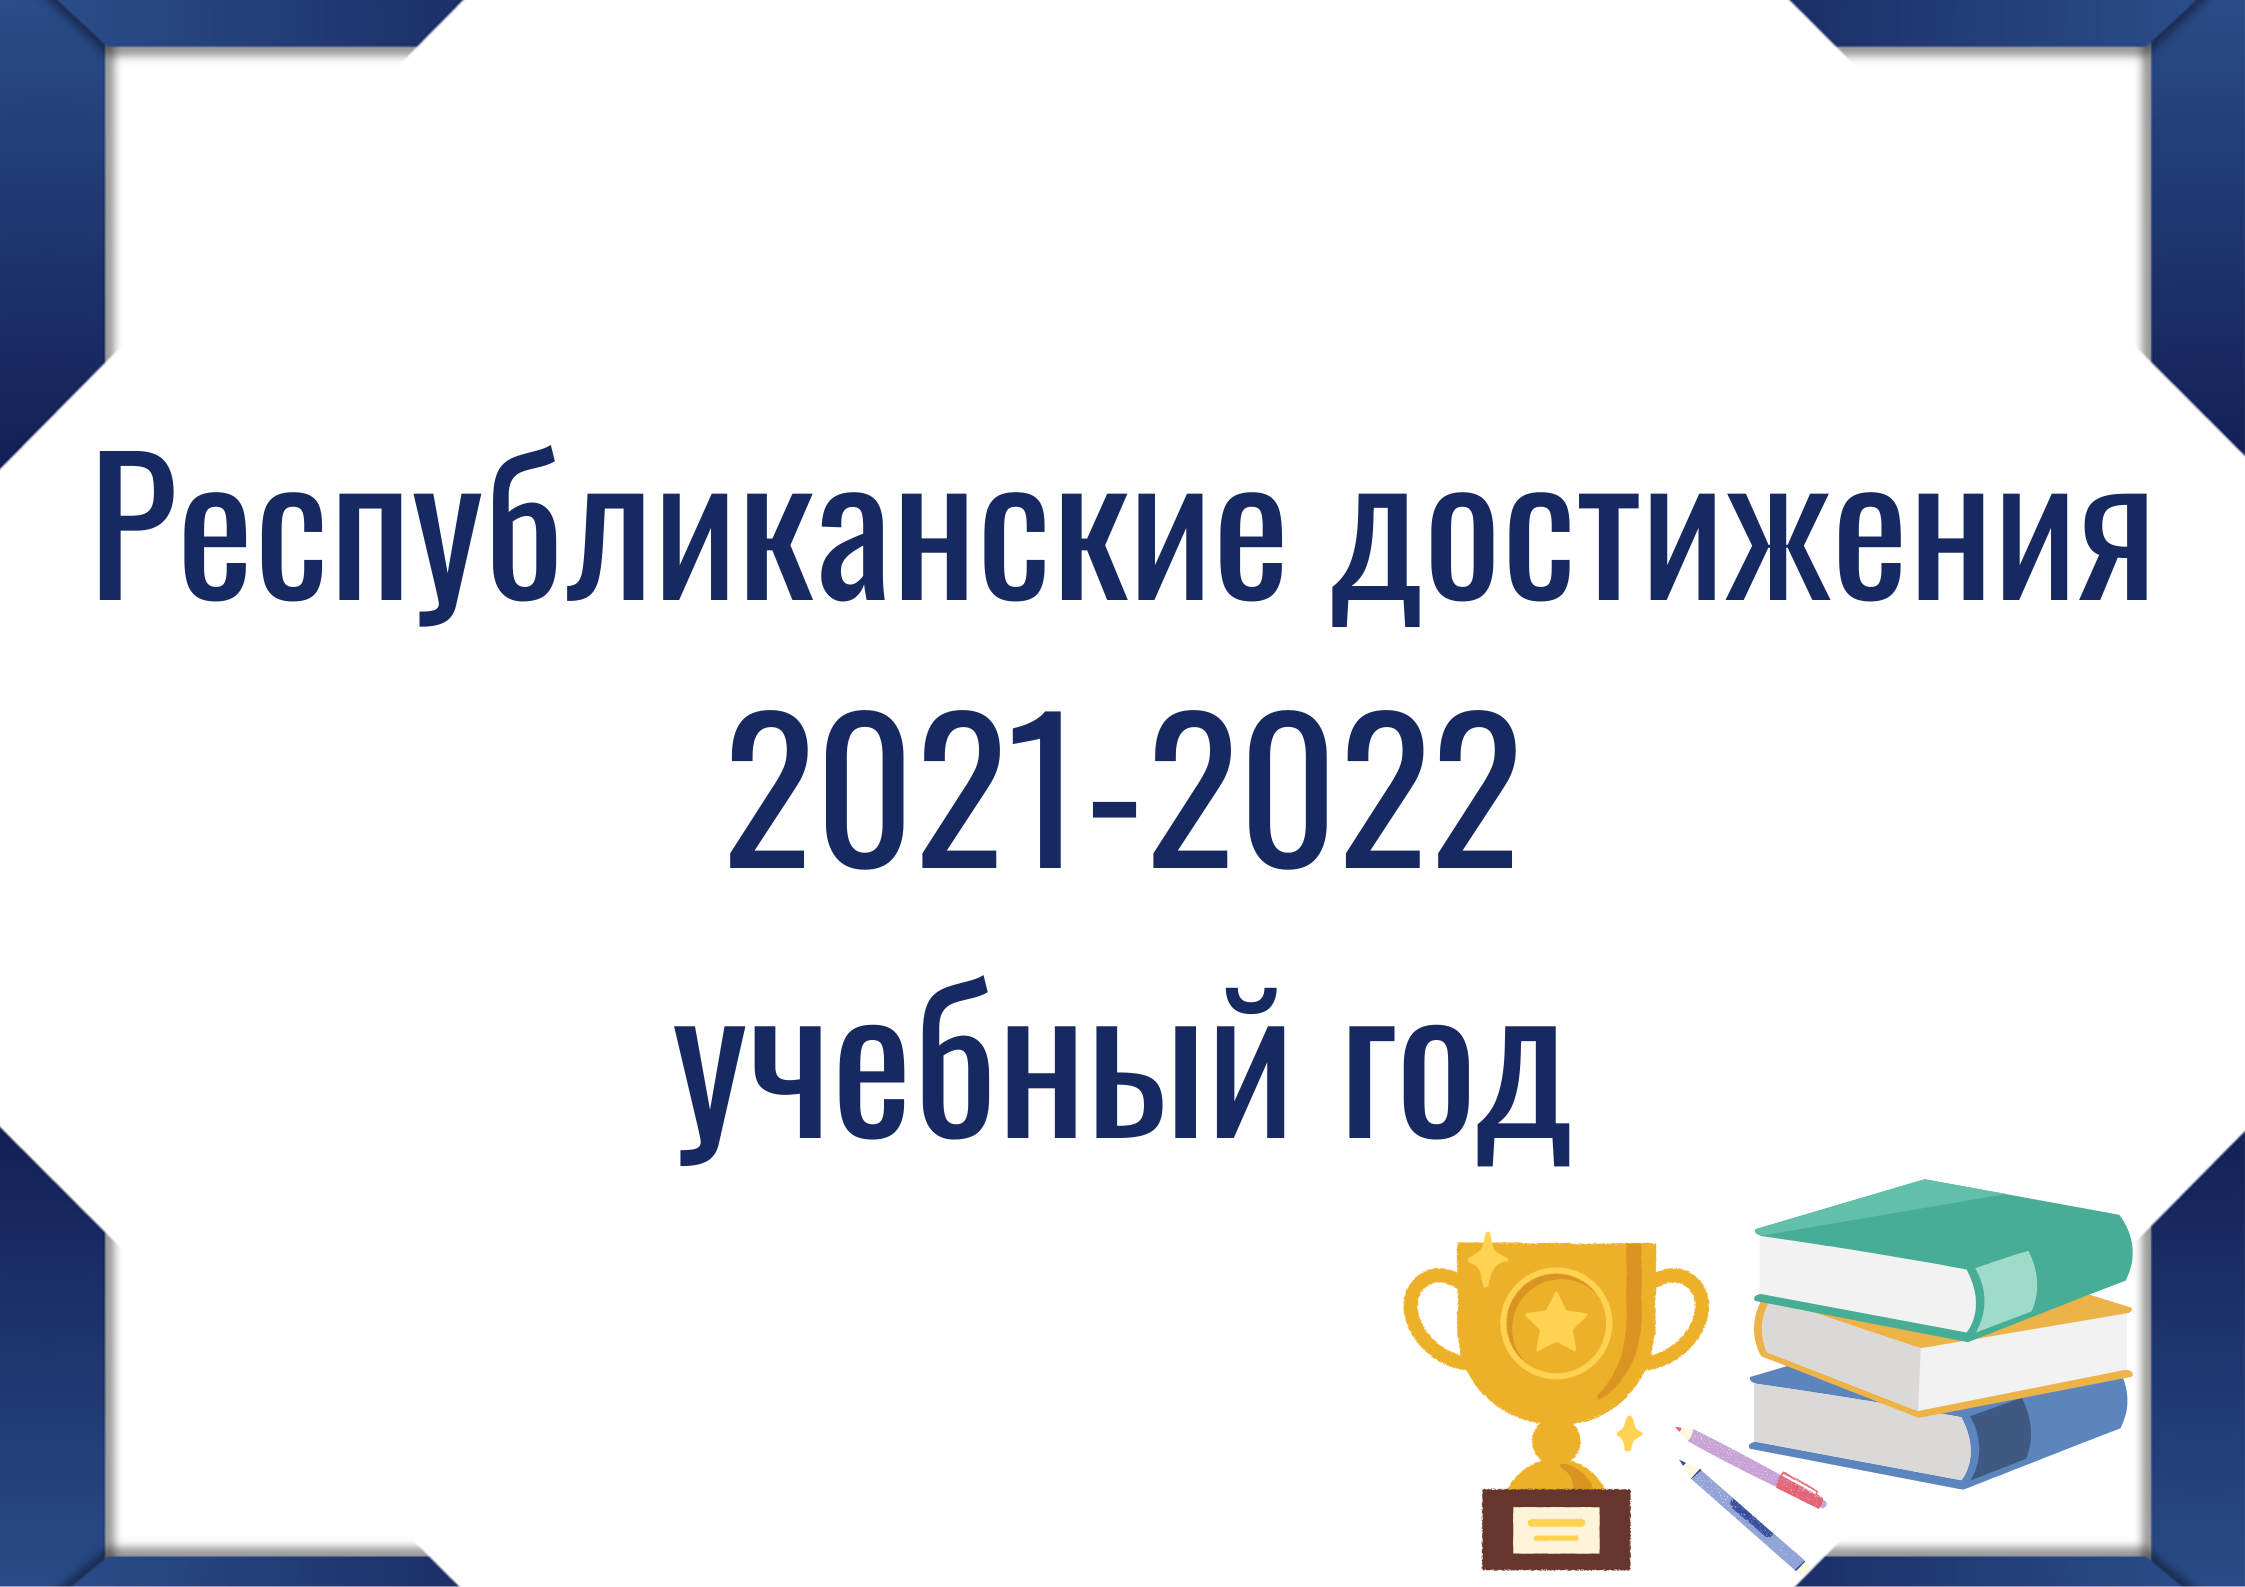 Кнопка "Республиканские достижения 2021-2022"